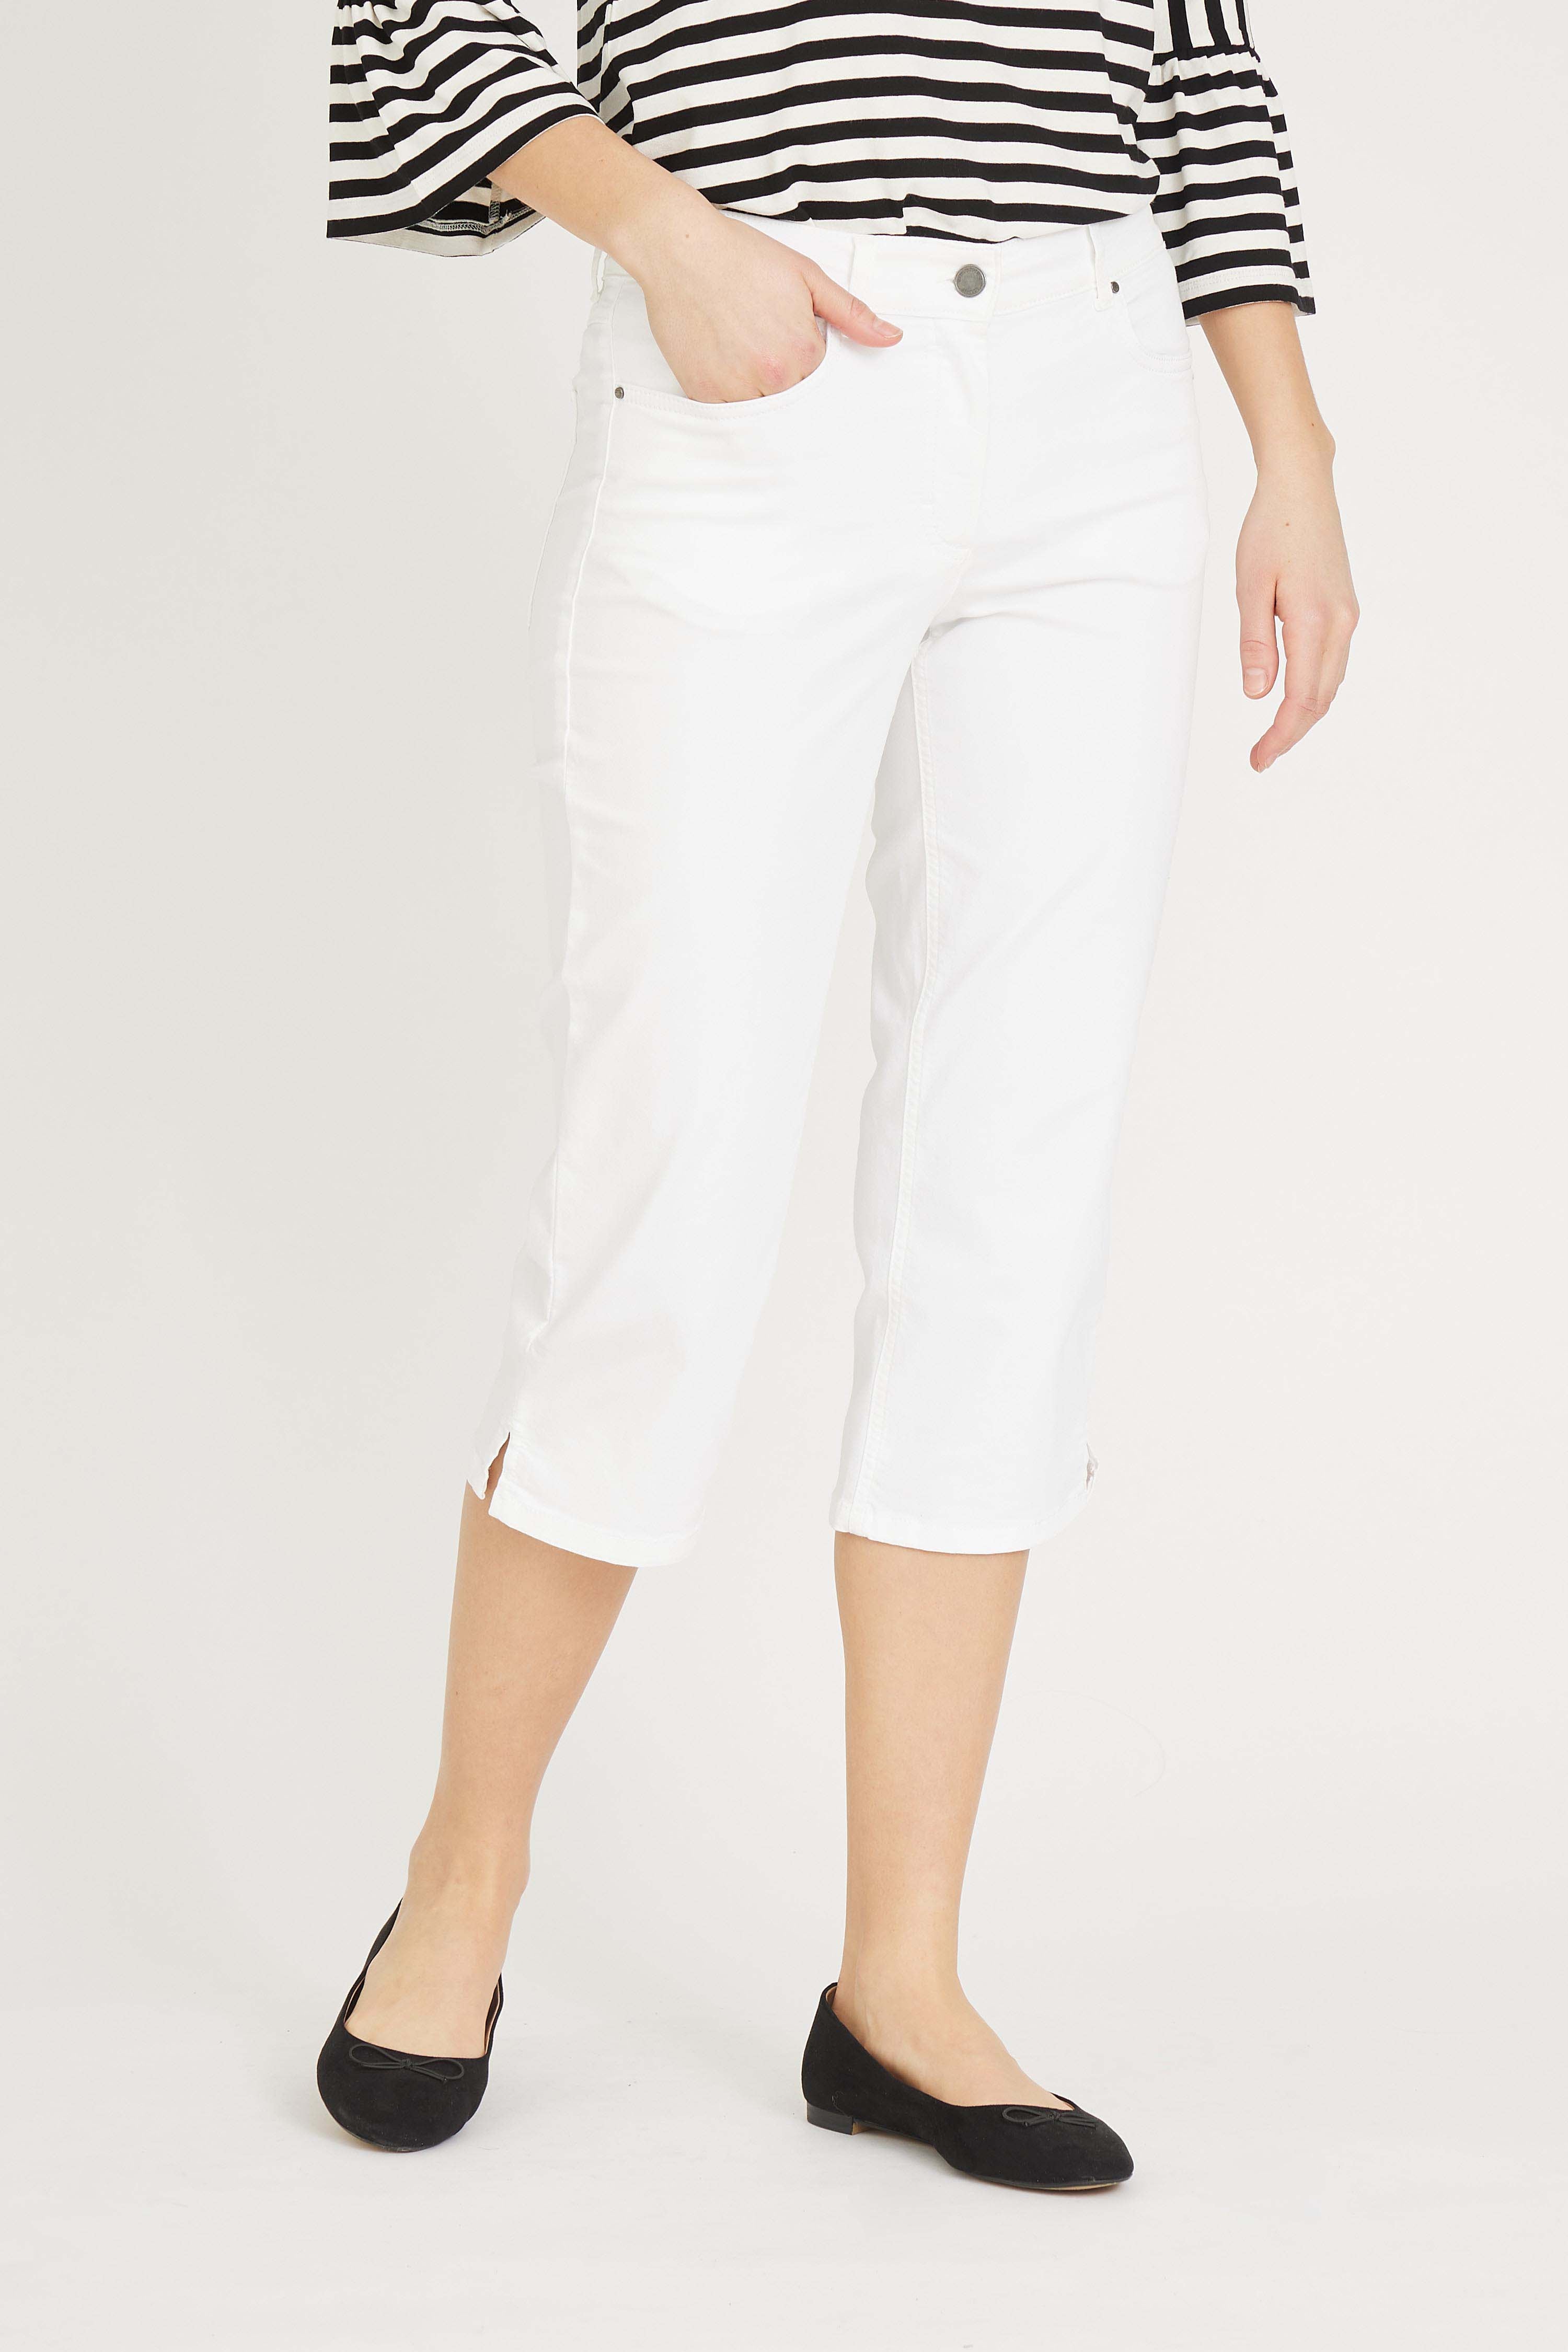 LAURIE  Charlotte Regular Capri Housut Trousers REGULAR 10100 White